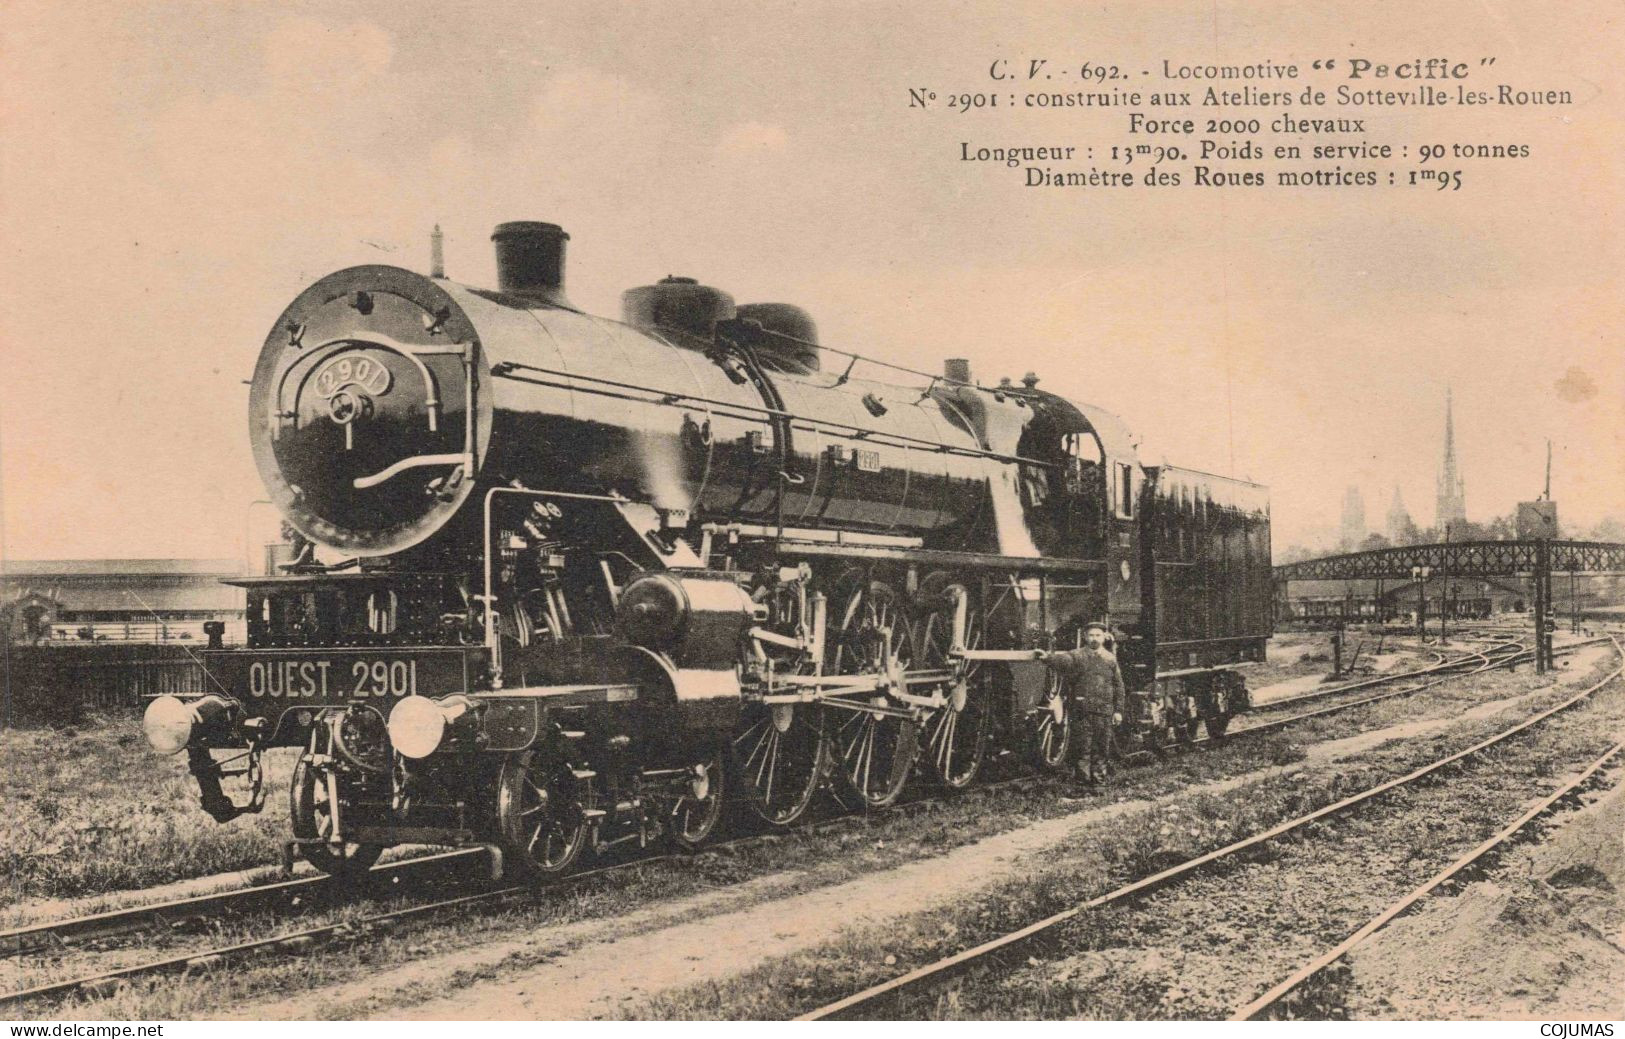 76 - SOTTEVILLE LES ROUEN - S20830 - Locomotive Pacific N°2901 Construite Aux Ateliers - Train - Sotteville Les Rouen